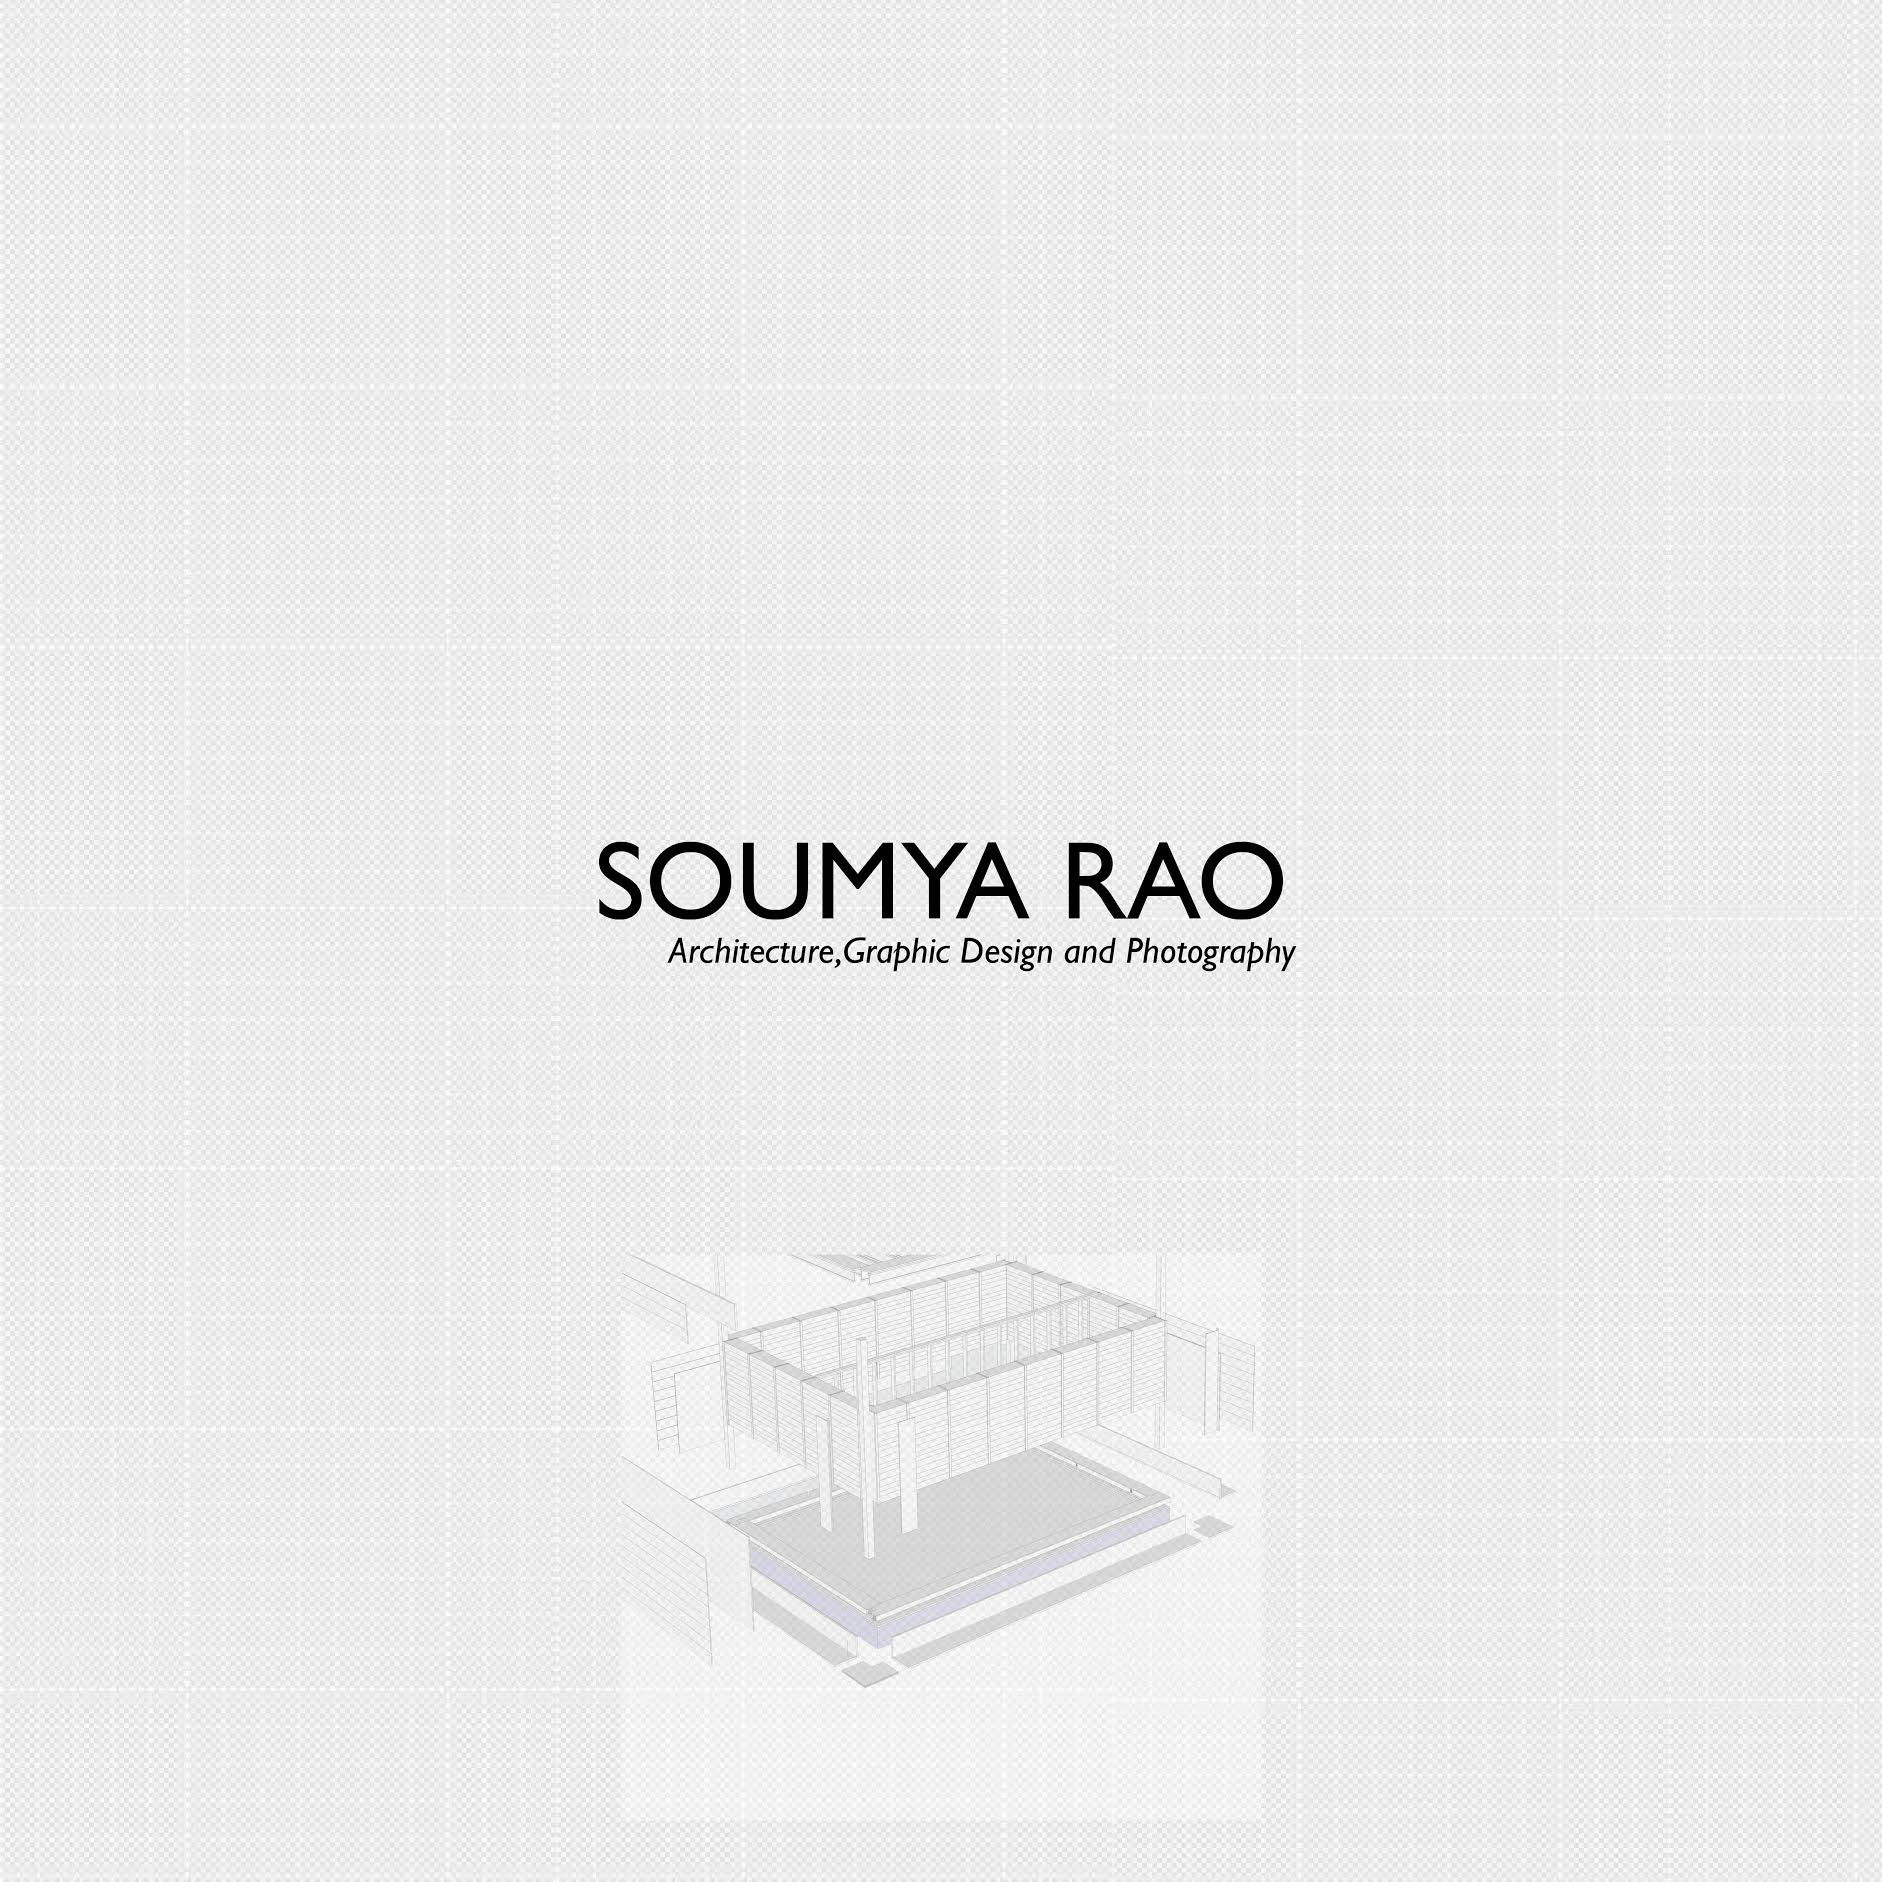 Soumya Rao